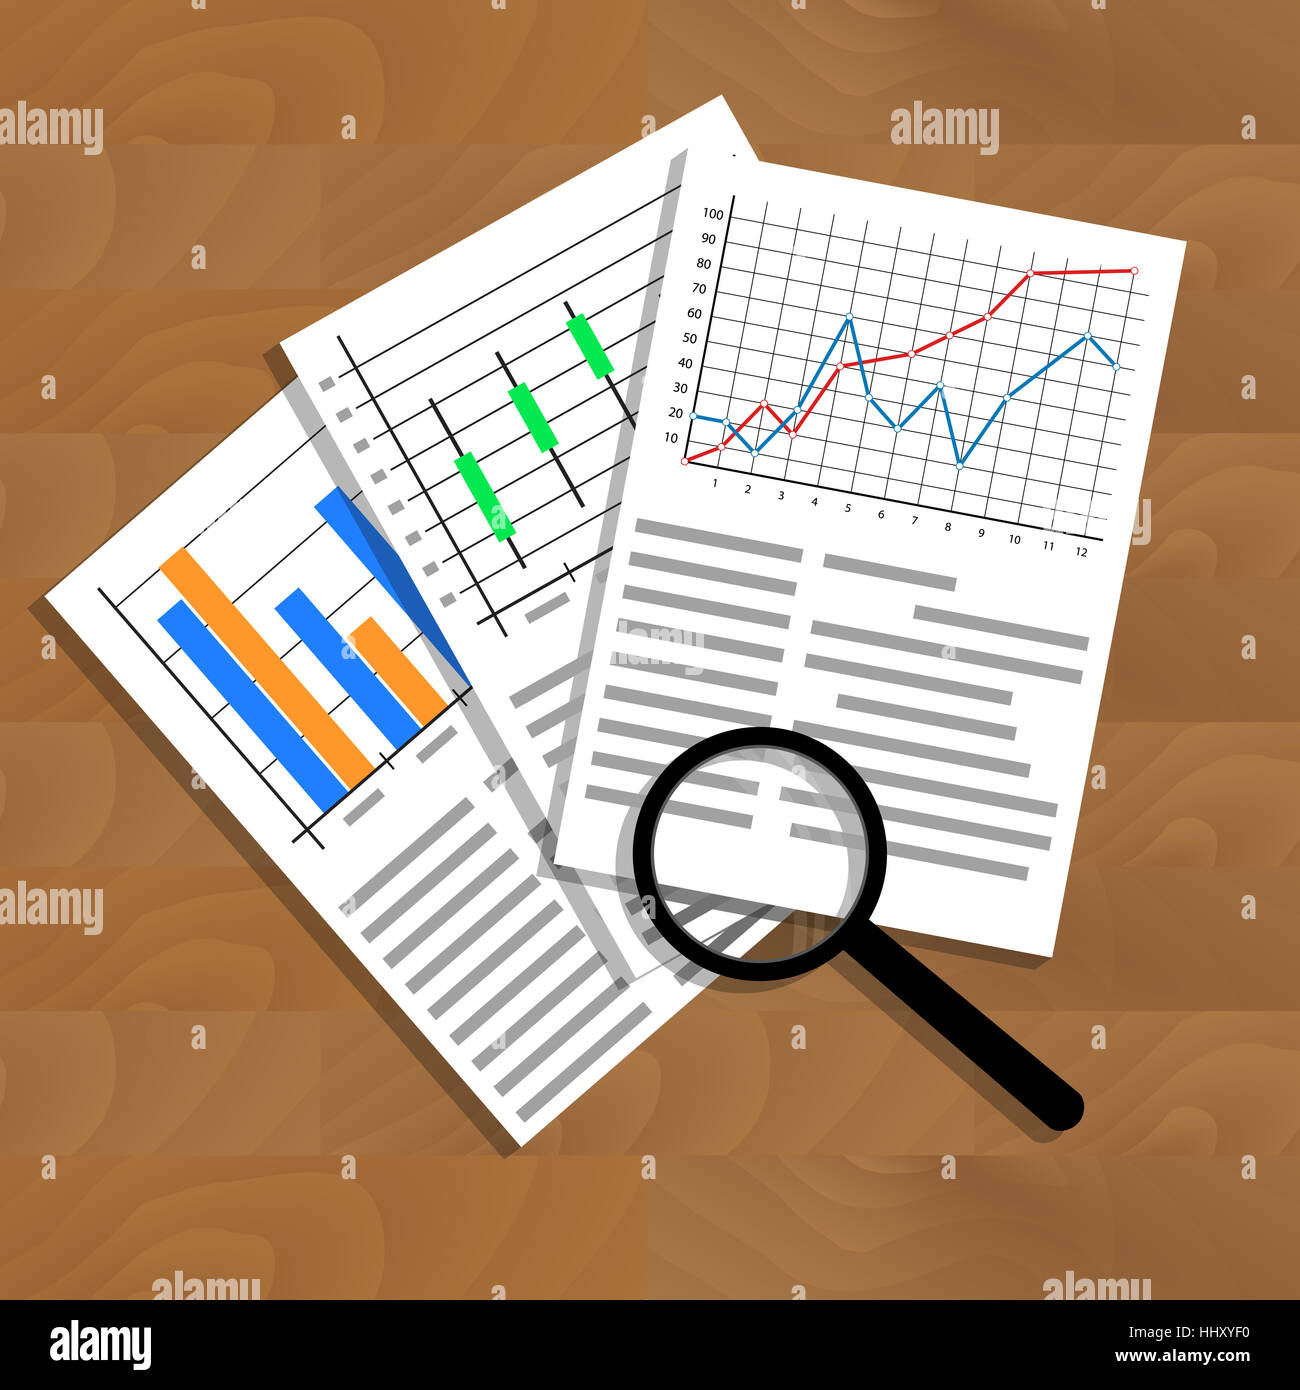 Analisi dei dati statistici. La ricerca di ottimizzazione ed infografico finanziario, business analytics illustrazione Foto Stock